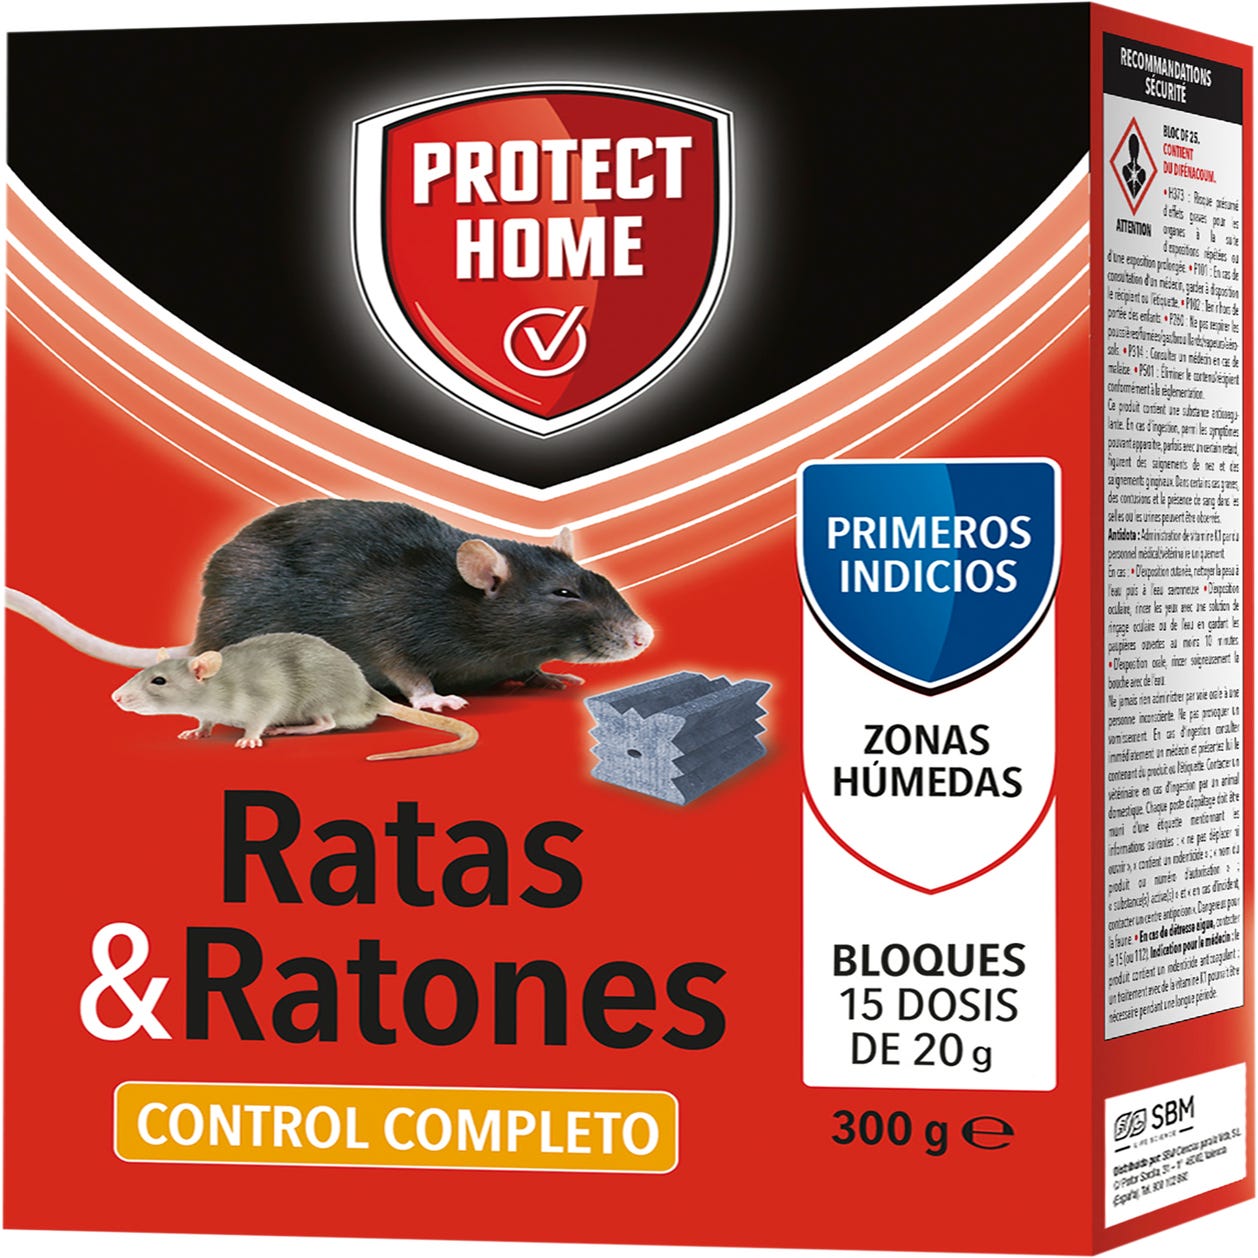 Las mejores ofertas en Estaciones de rodenticidas, cebos y cebos para ratas